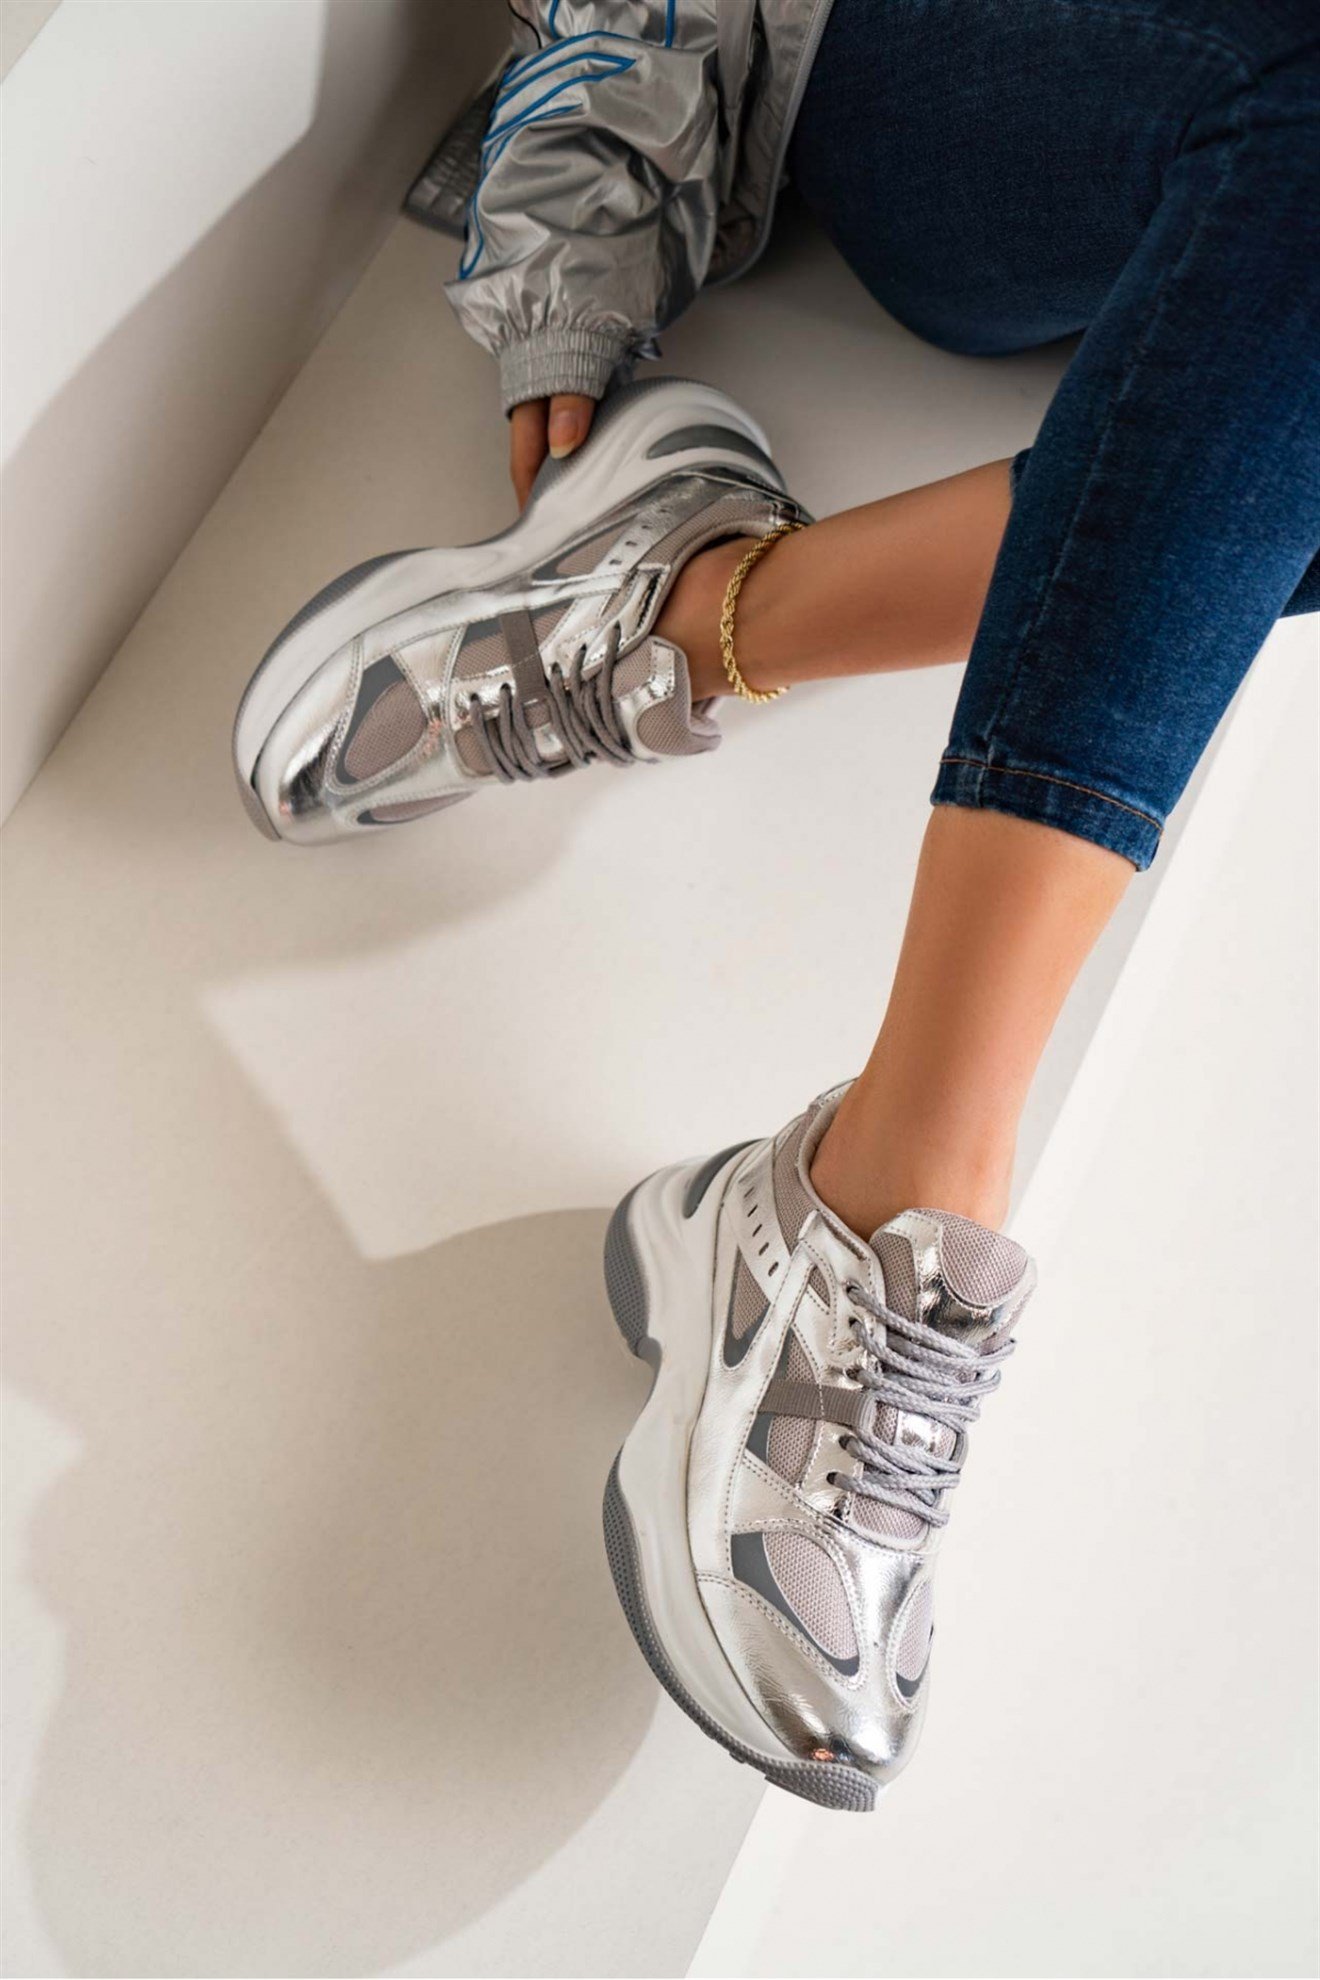 Reyna Gümüş Mat Kalın Taban Bağlı Kadın Sneakers Spor Ayakkabı